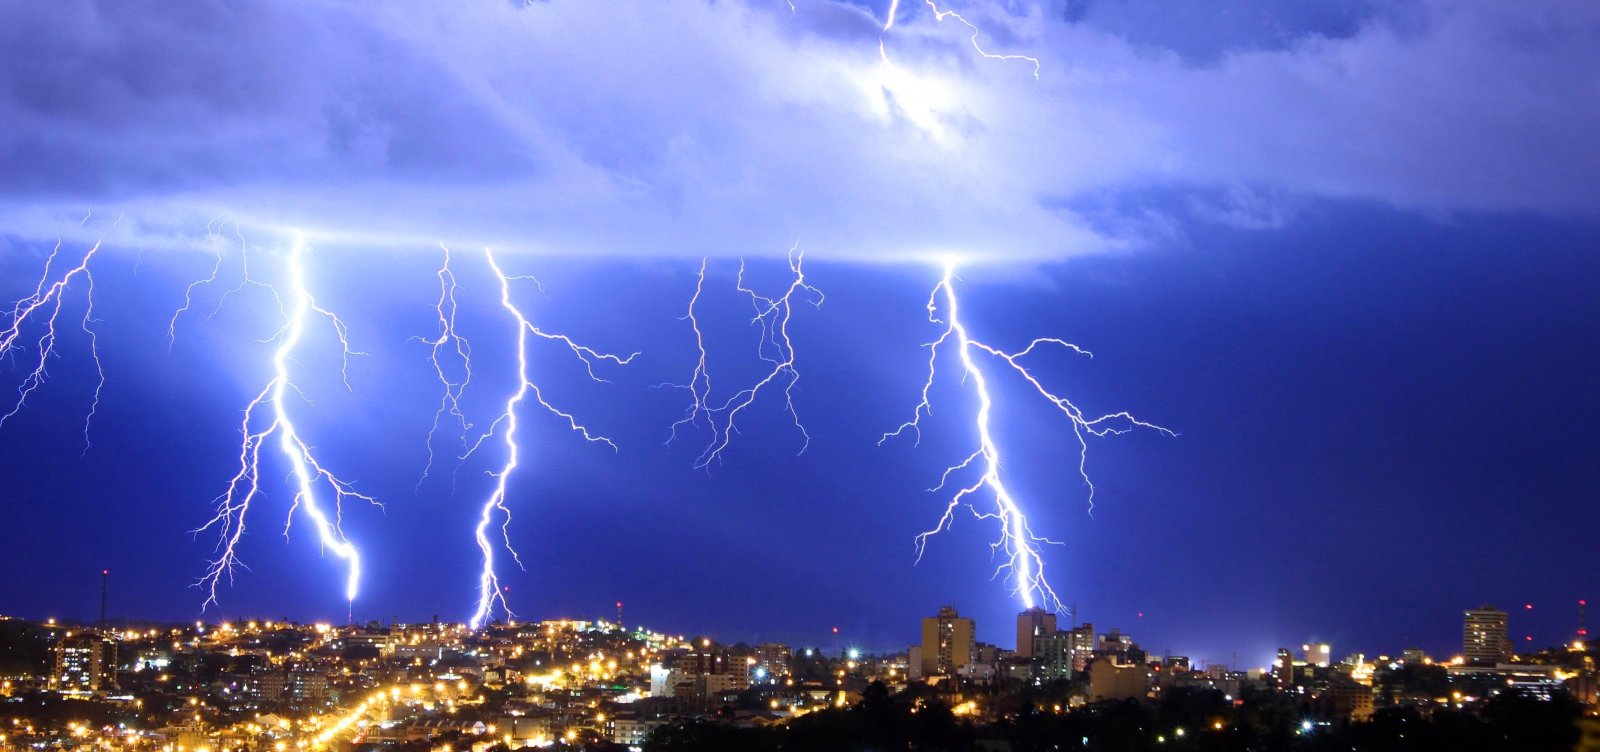 Em duas horas, Salvador ultrapassa 460 raios registrados durante chuva